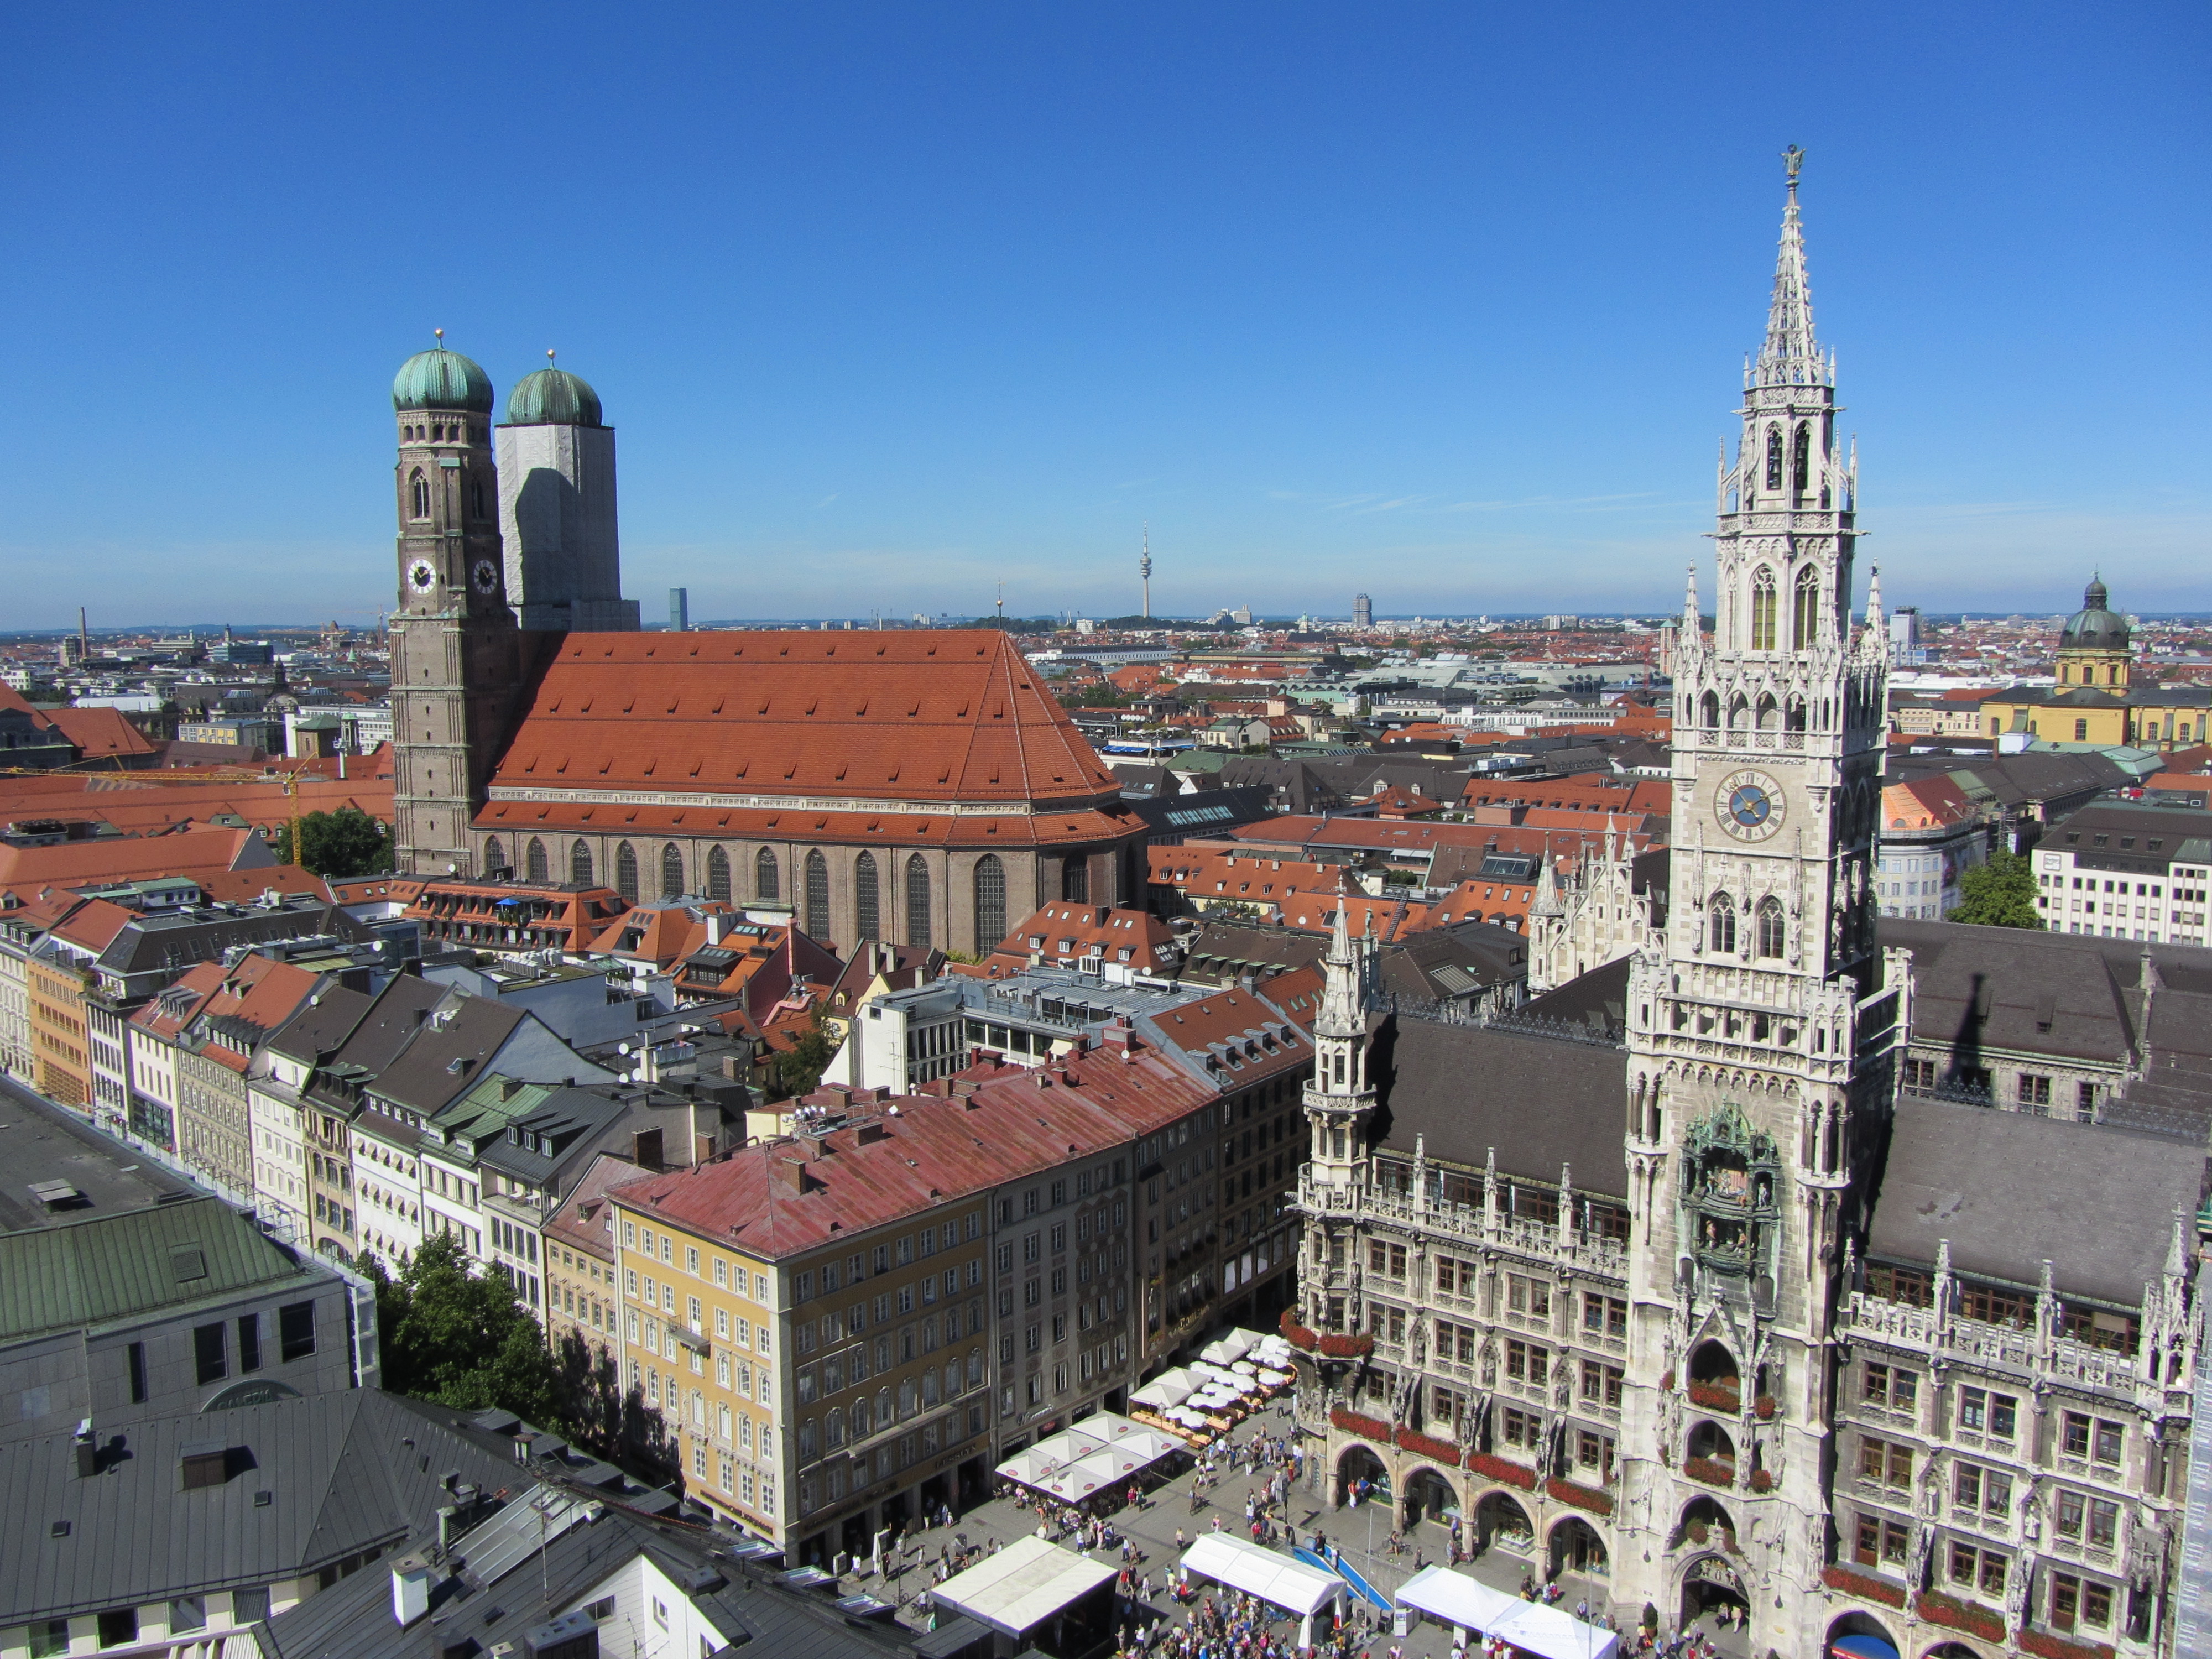 Blick auf die Münchner Innenstadt mit Marienplatz, Frauenkirche und der Einkaufspassage Kaufingerstraße